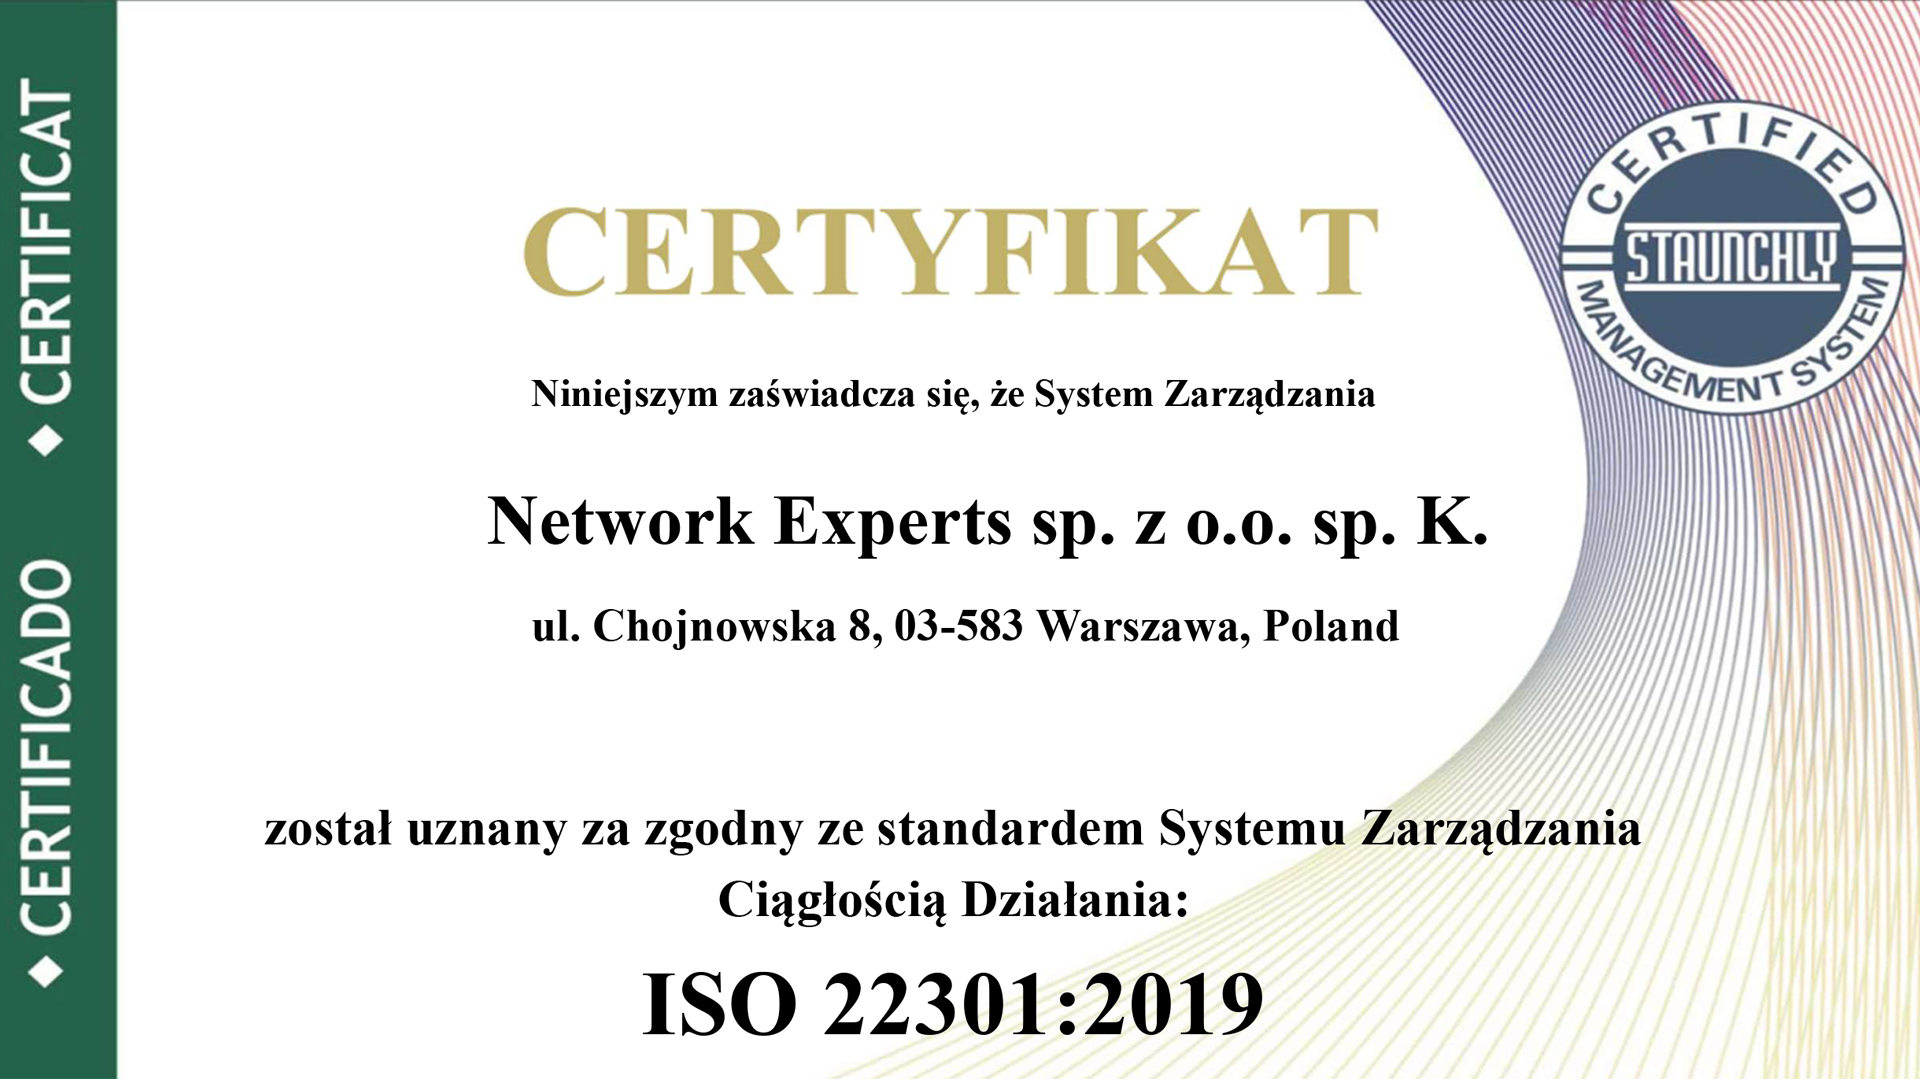 Uzyskaliśmy certyfikację ISO 22301:2019